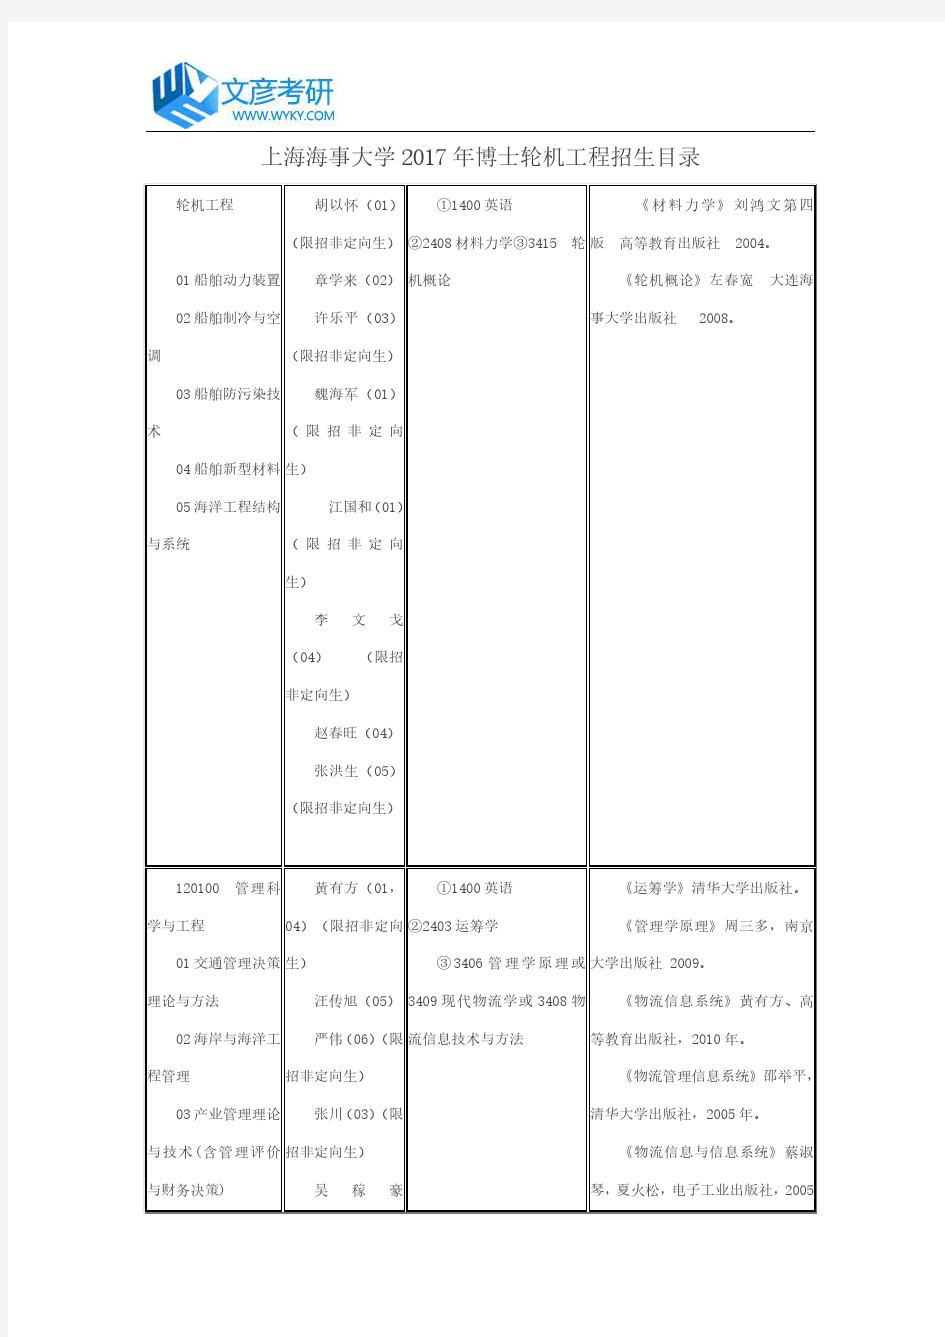 上海海事大学2017年博士轮机工程招生目录_上海海事大学考研网